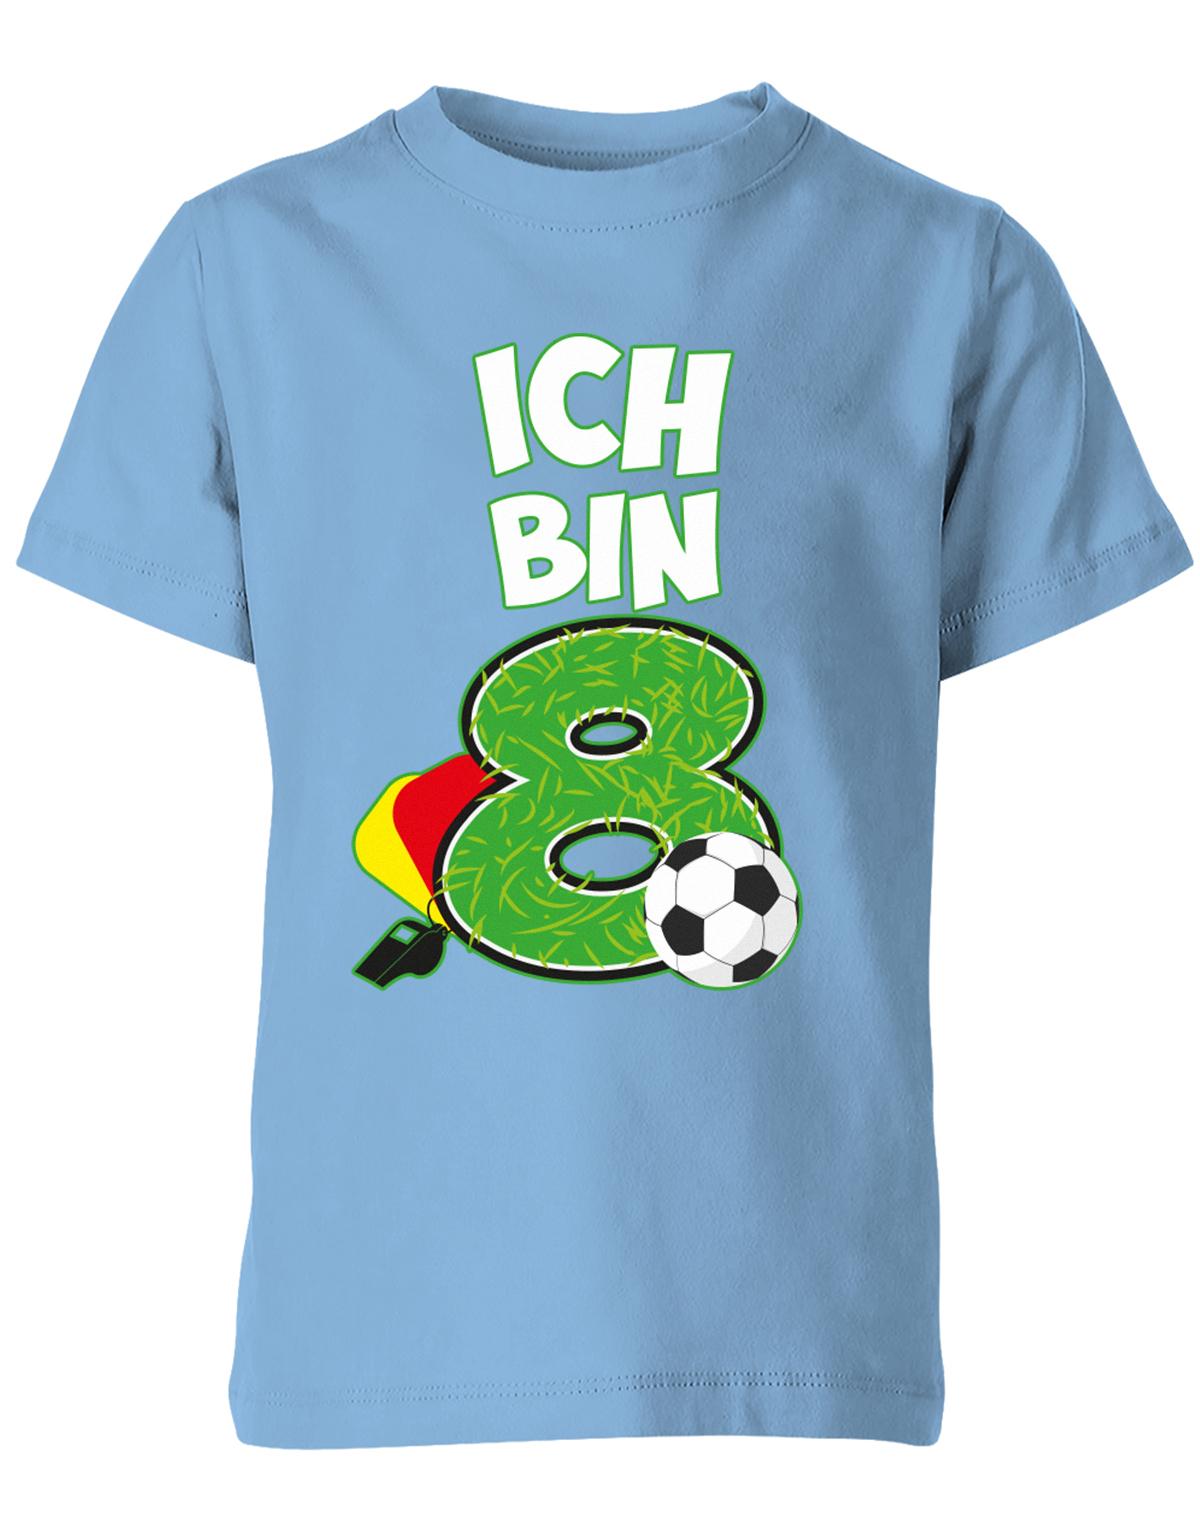 ich-bin-8-fussball-rote-gelbe-karte-geburtstag-fussballer-shirt-kinder-shirt-hellblau5nxbdLZXsEsXm